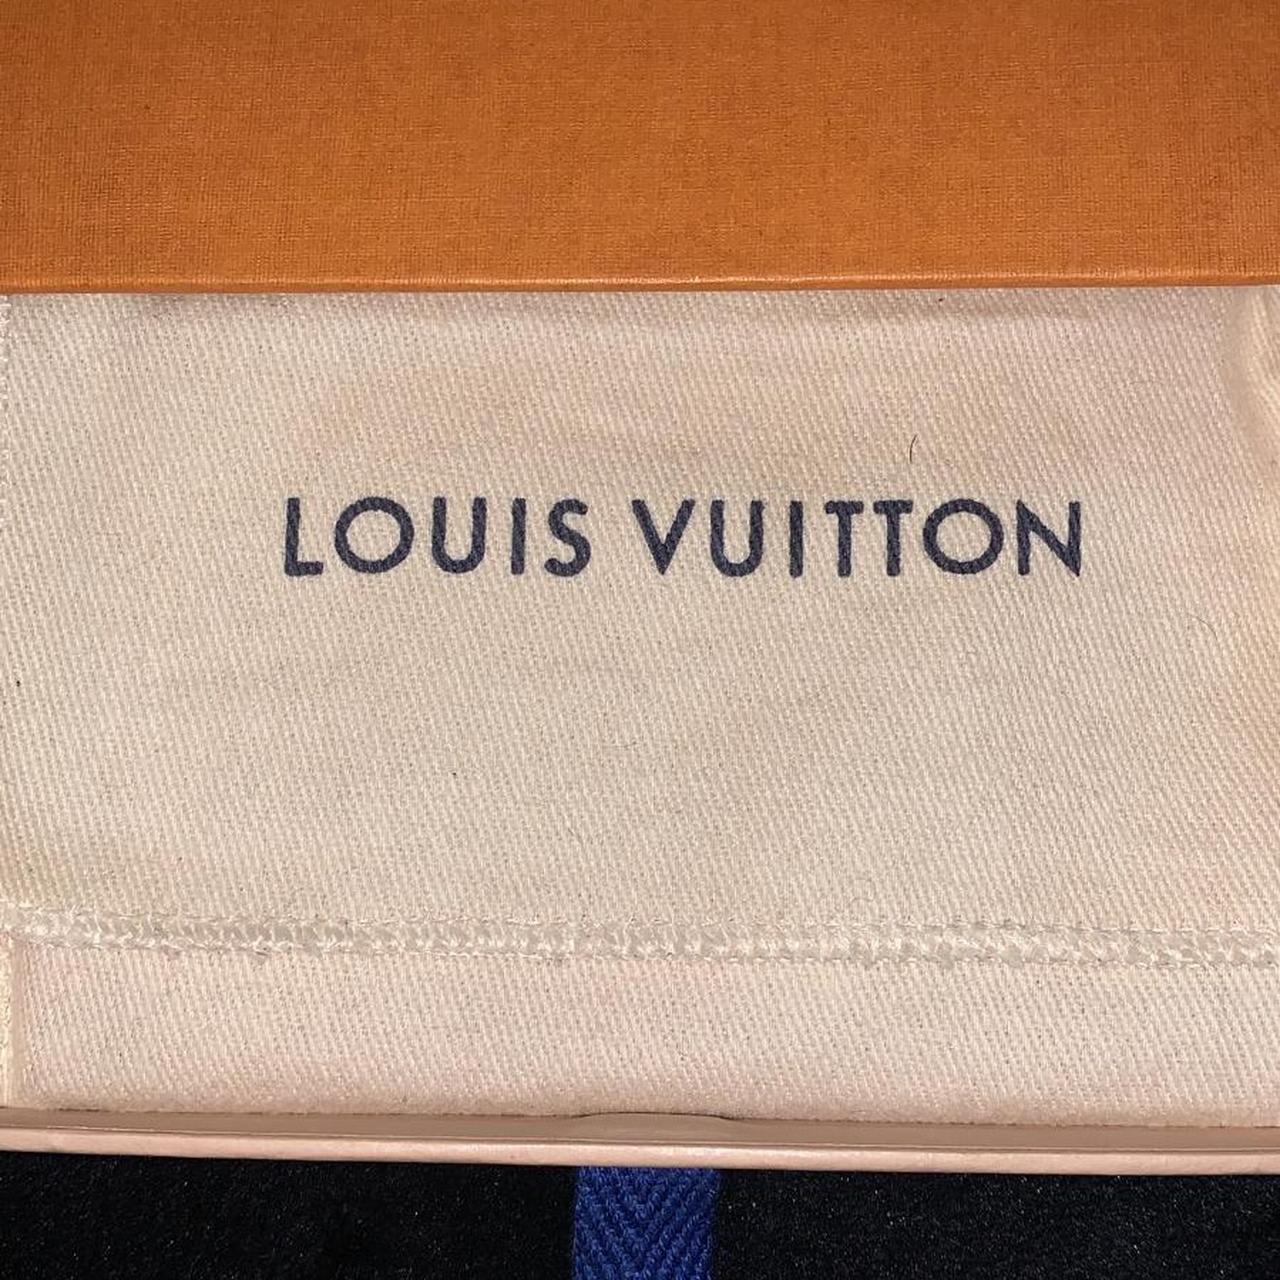 Louis Vuitton Business Card Holder 10/10 - brand - Depop